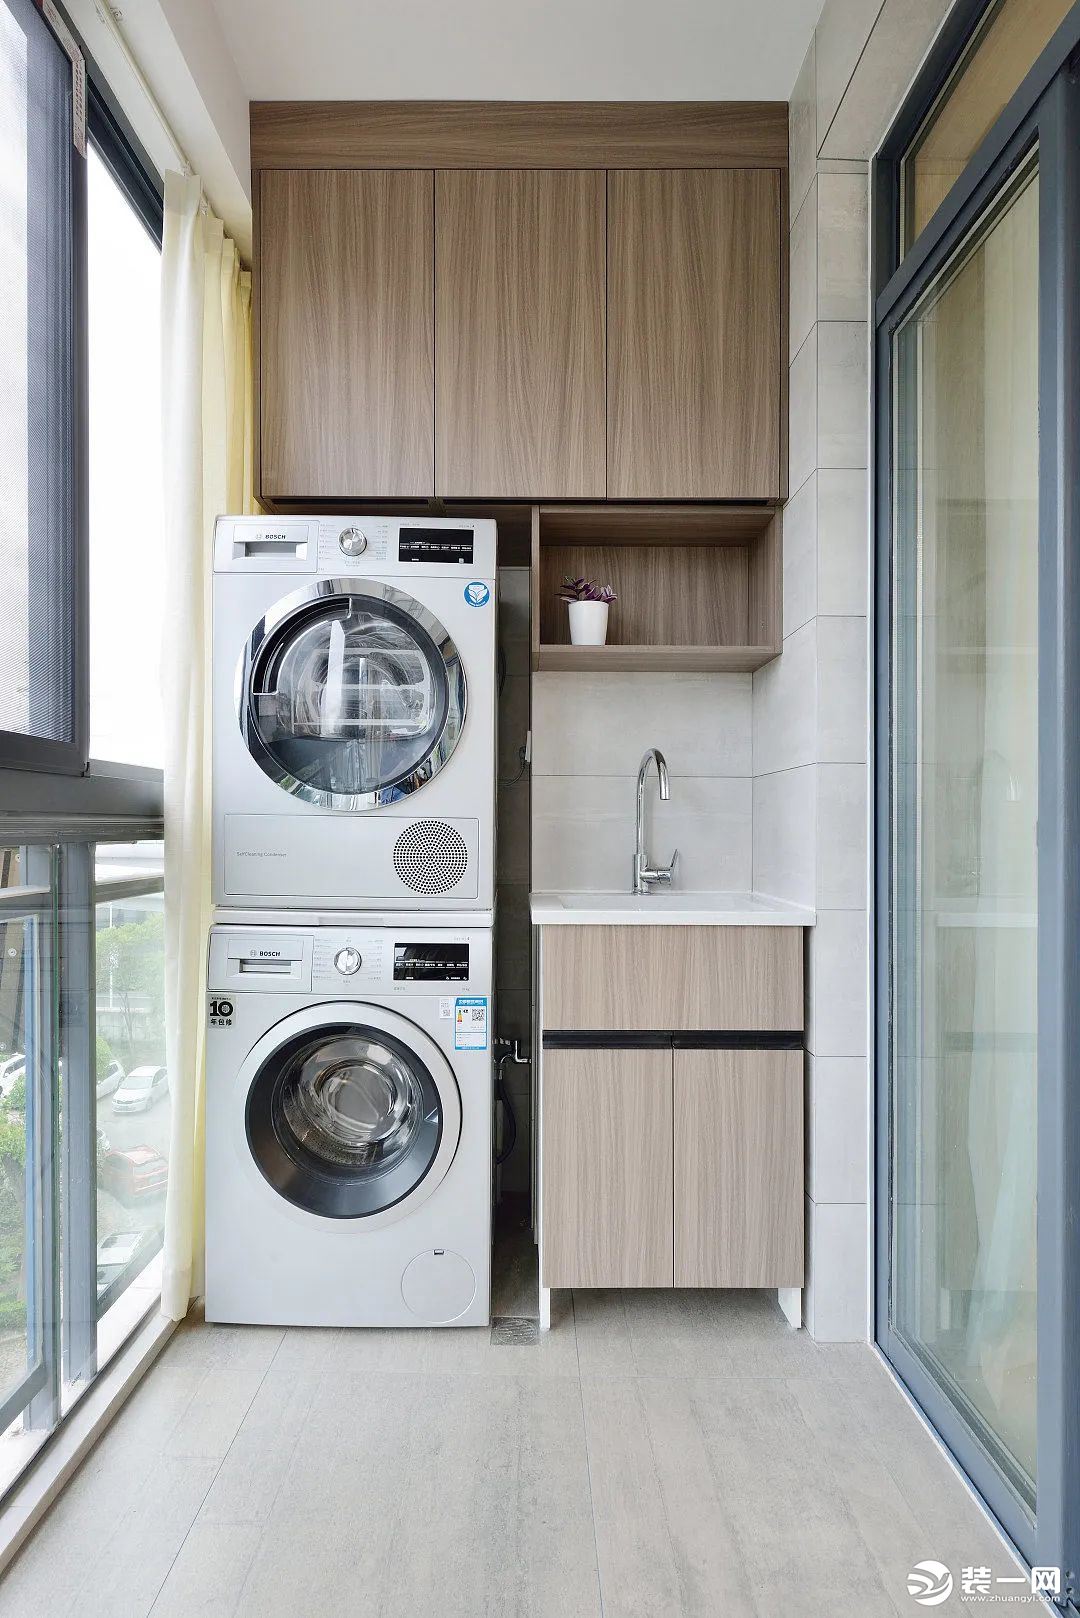 阳台右侧设计成洗衣房，洗衣机和烘干机竖直叠放，使用方便节省空间。